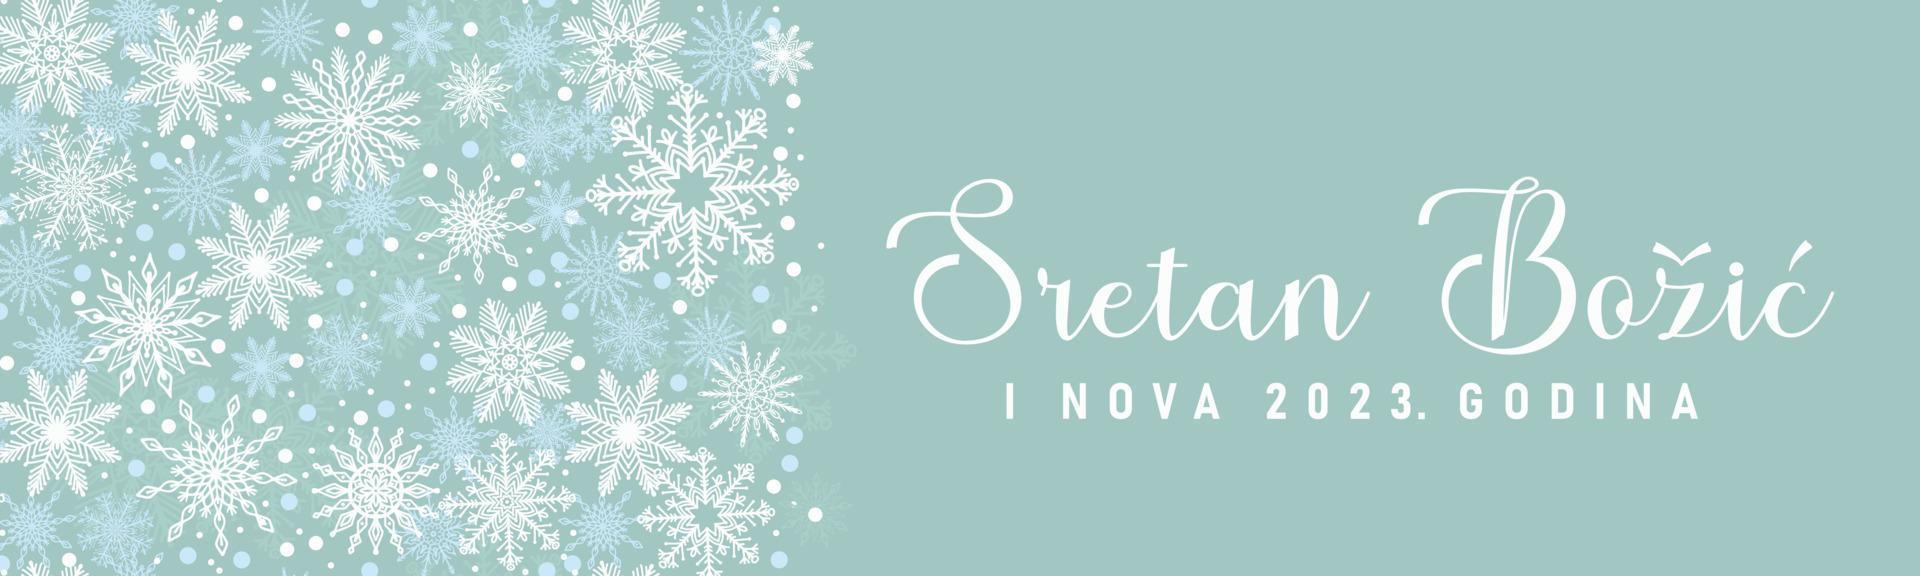 sretan bozic i nova 2023 godina - vrolijk kerstfeest en nieuwjaar in het kroatisch. elegante feestelijke vakantiebanner met sneeuwvlokpatroon vector